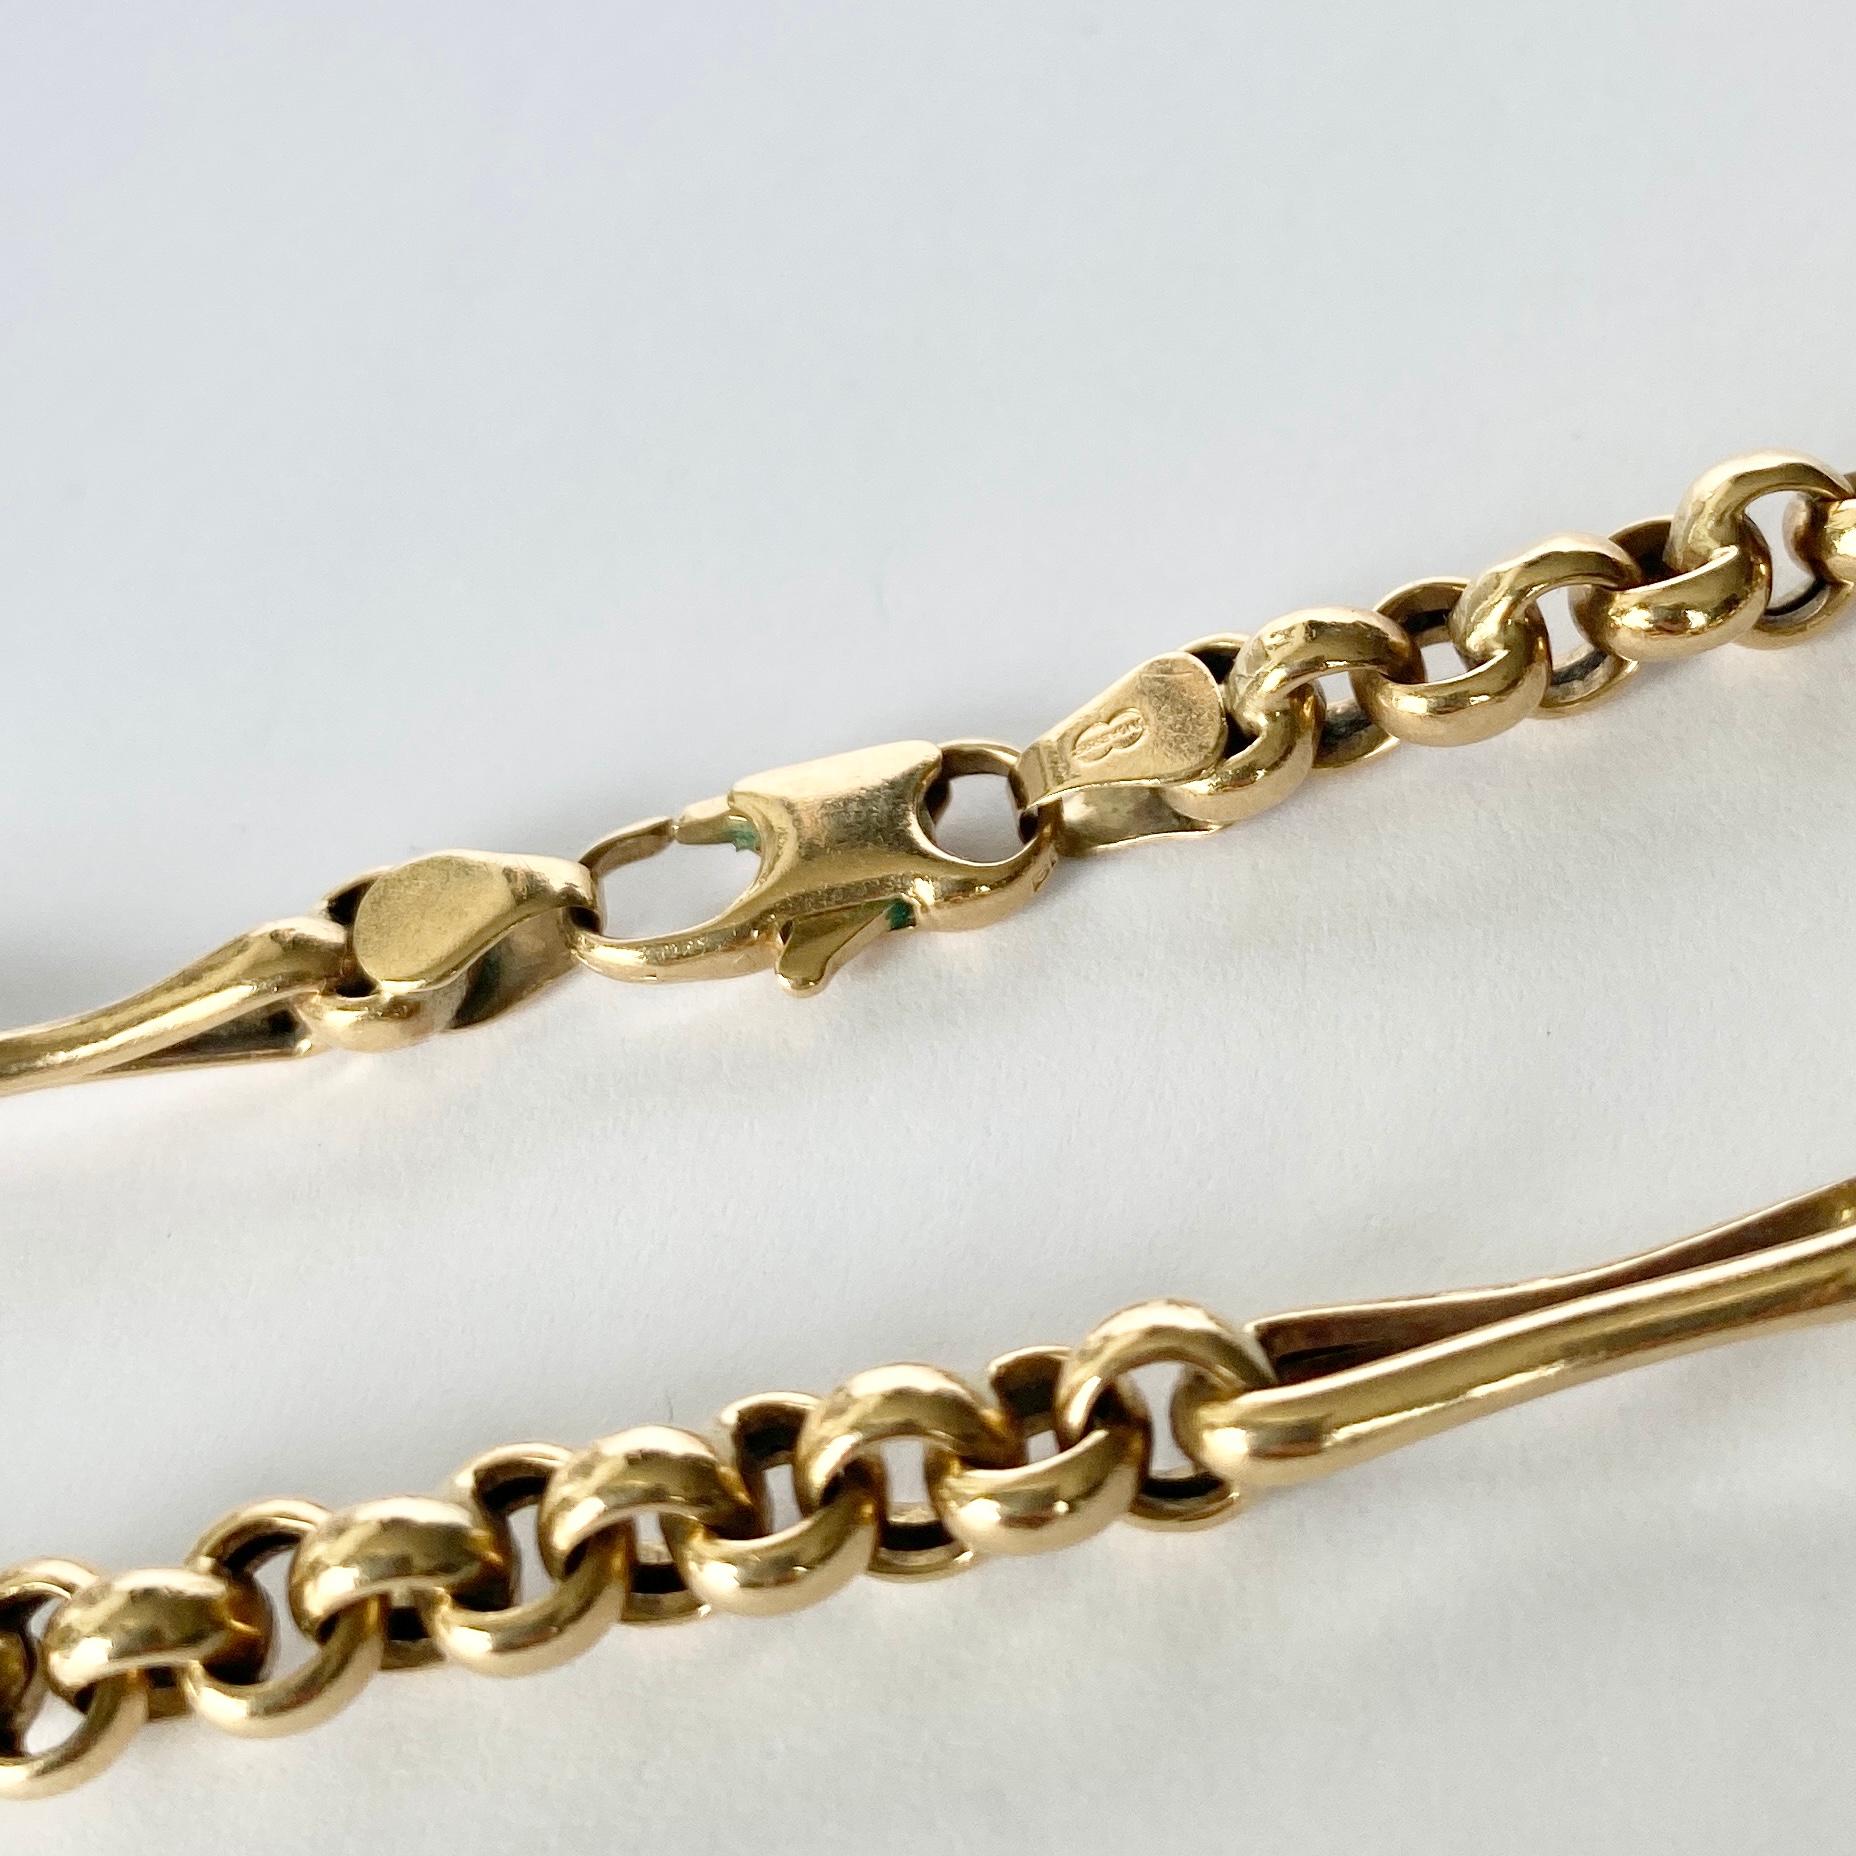 Dieses wunderschöne Armband ist aus 9-karätigem Gold gefertigt. Einer der Stile ähnelt dem Posaunenglied und der andere ist eine Belcher-Kette.

Länge: 19 cm 
Breite: 5mm 

Gewicht: 5,6 g